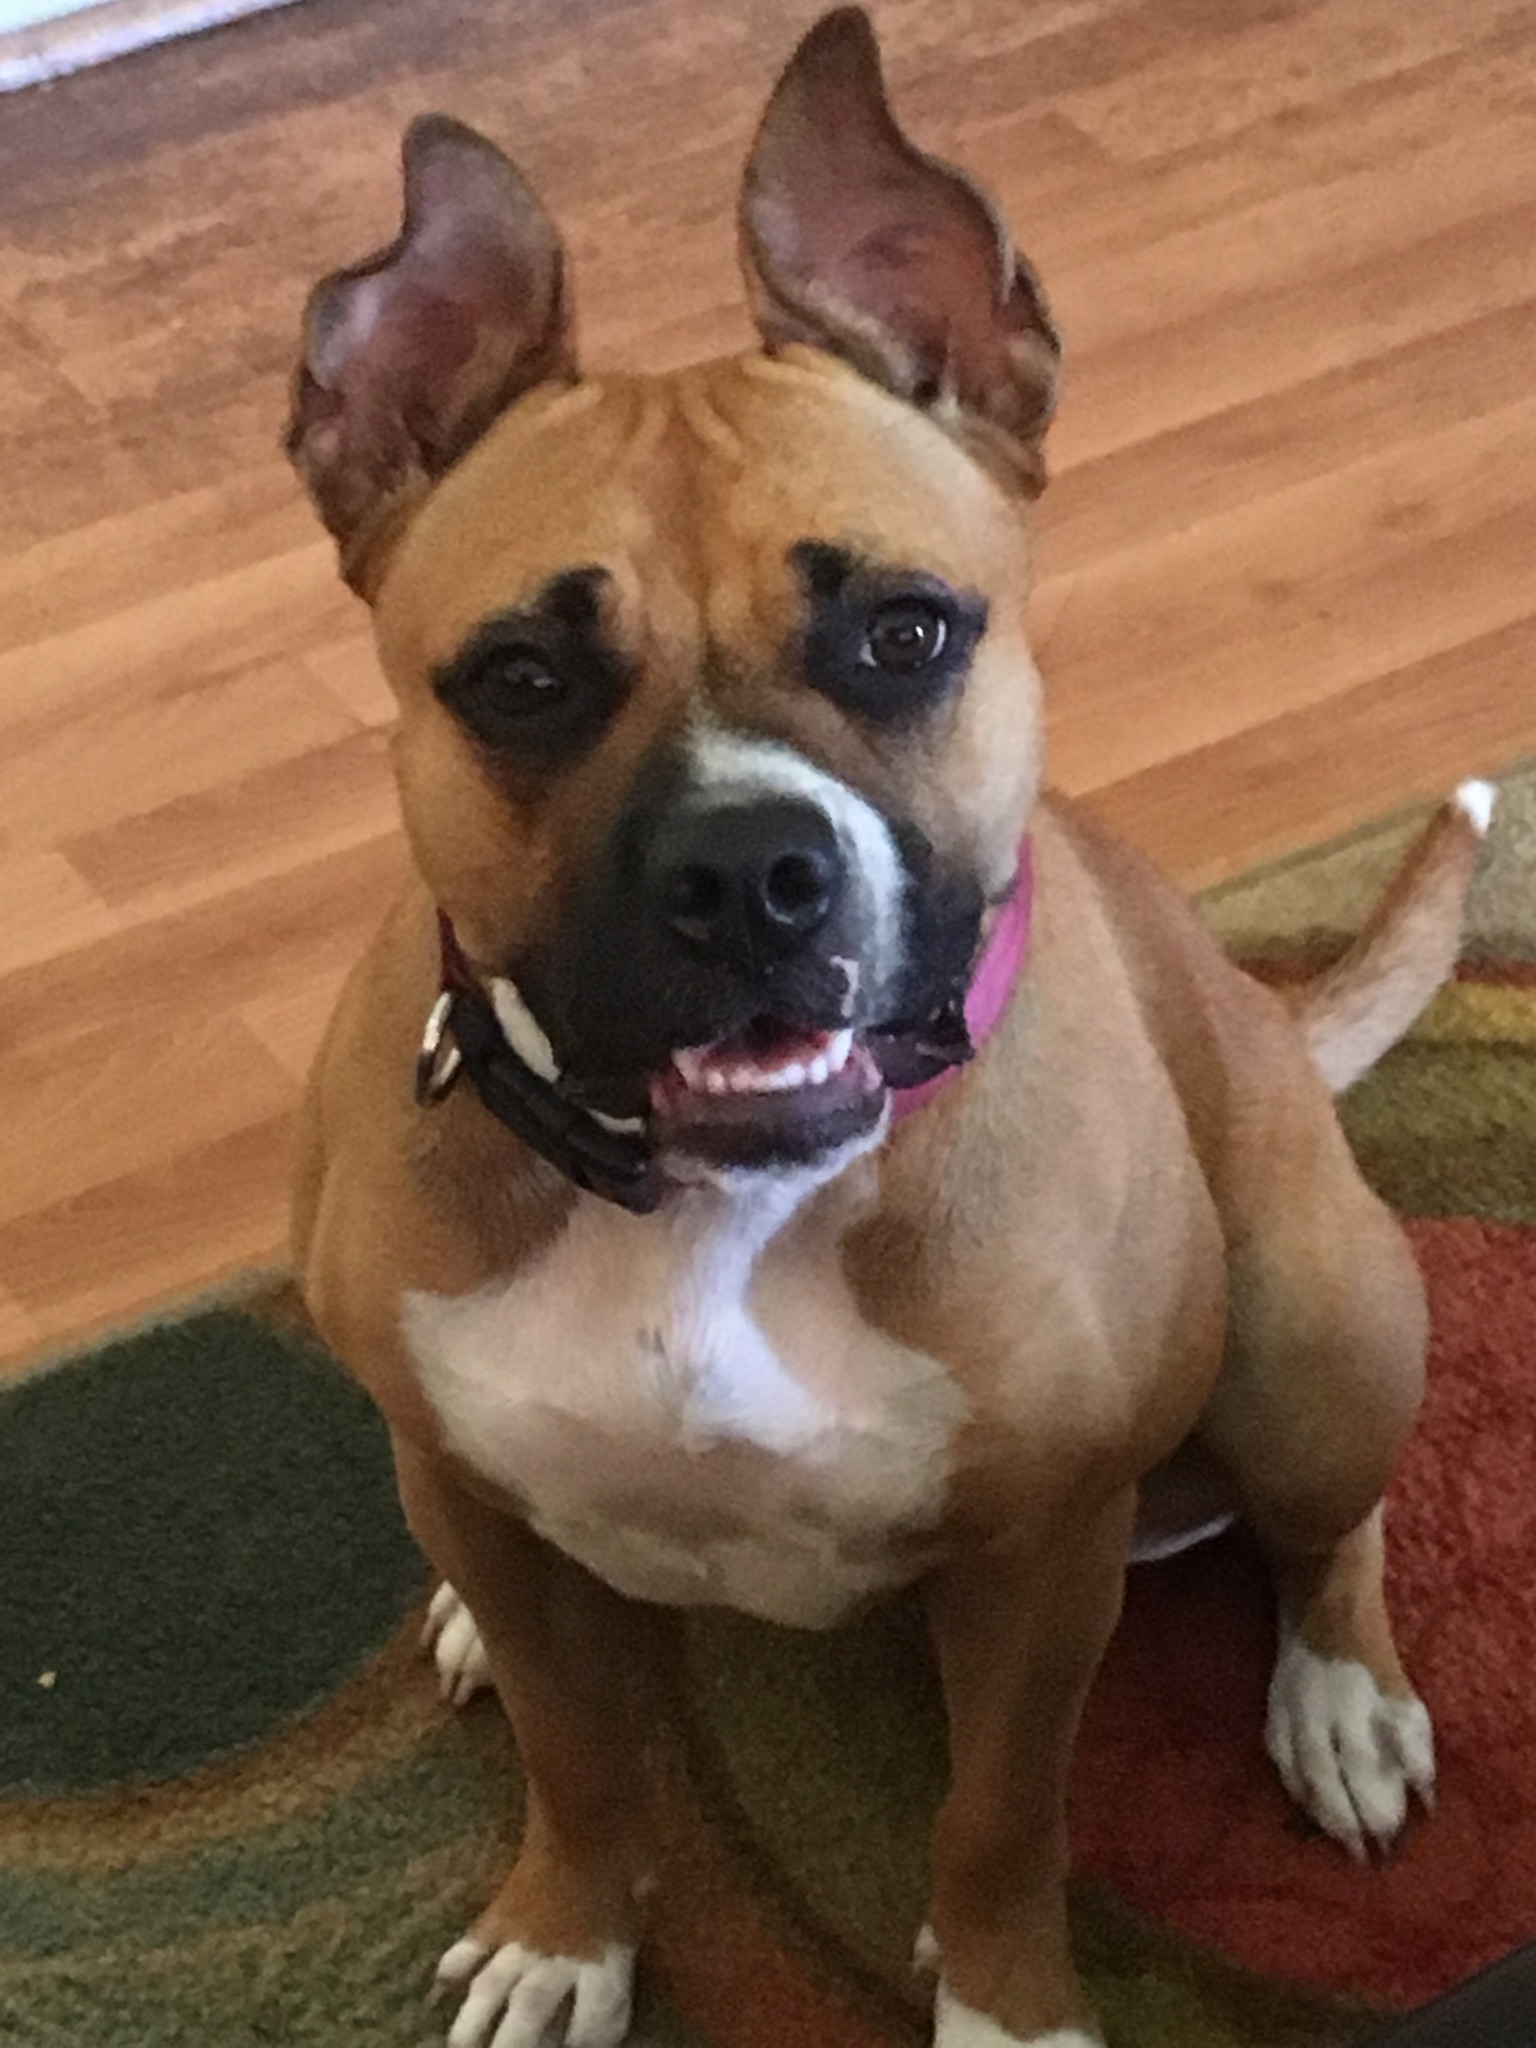 adoptable Dog in Miami,FL named Bella